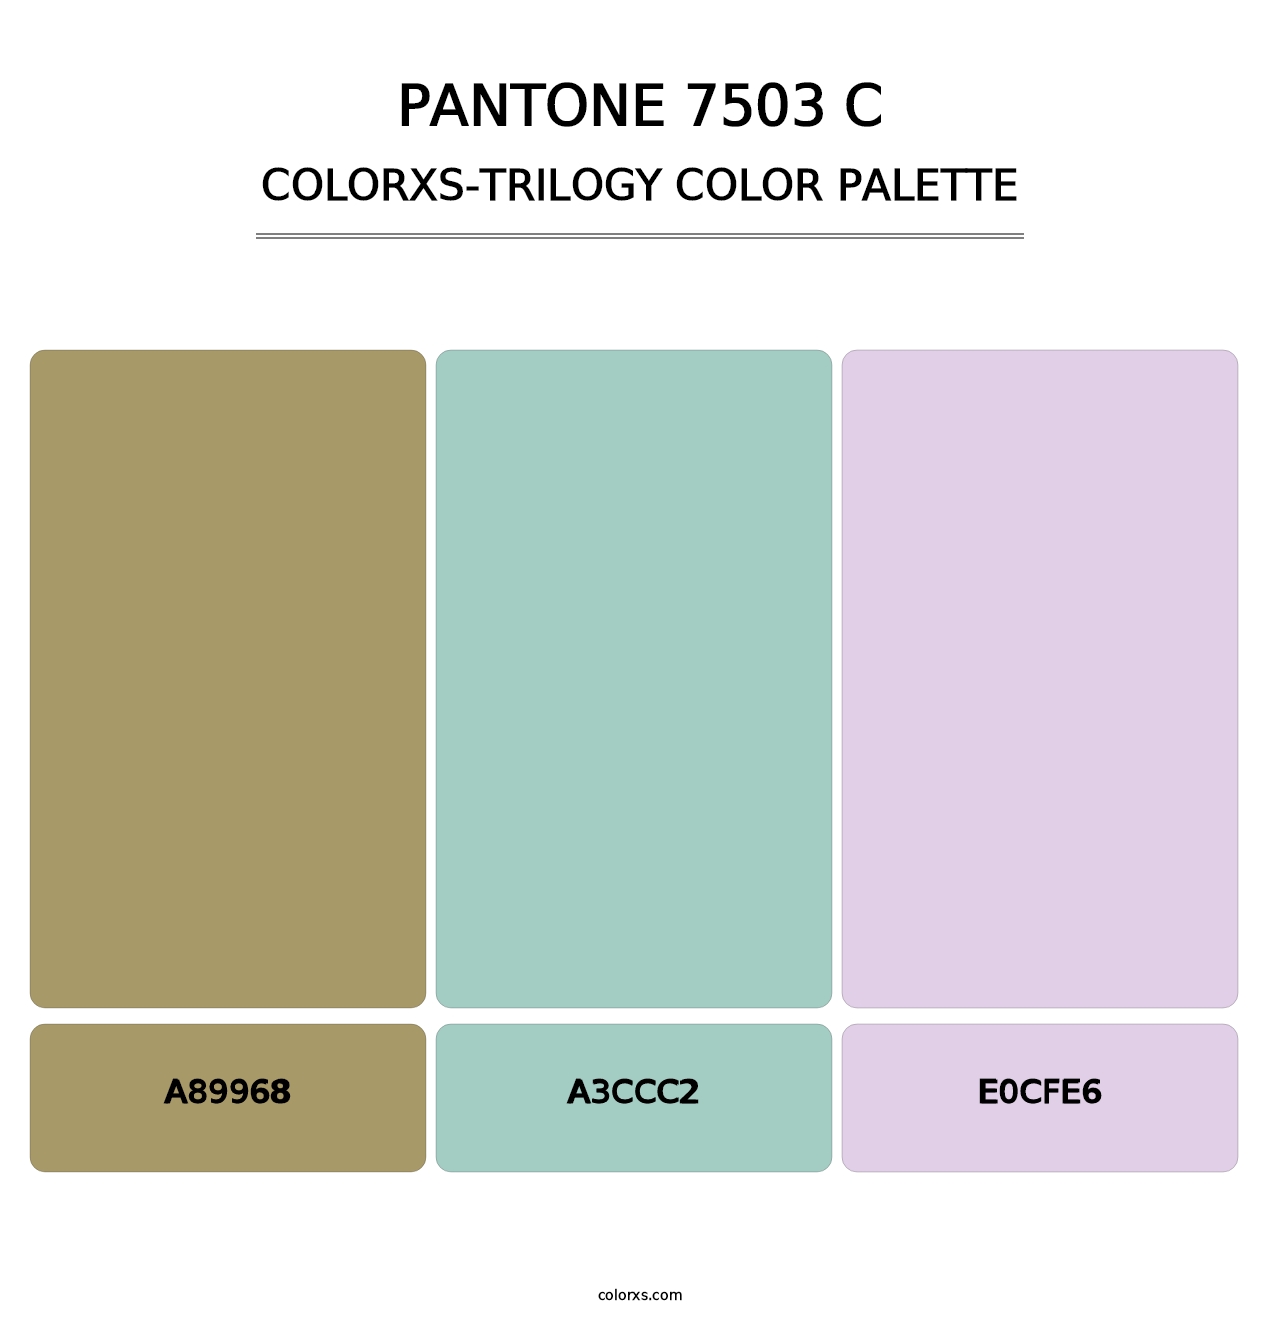 PANTONE 7503 C - Colorxs Trilogy Palette